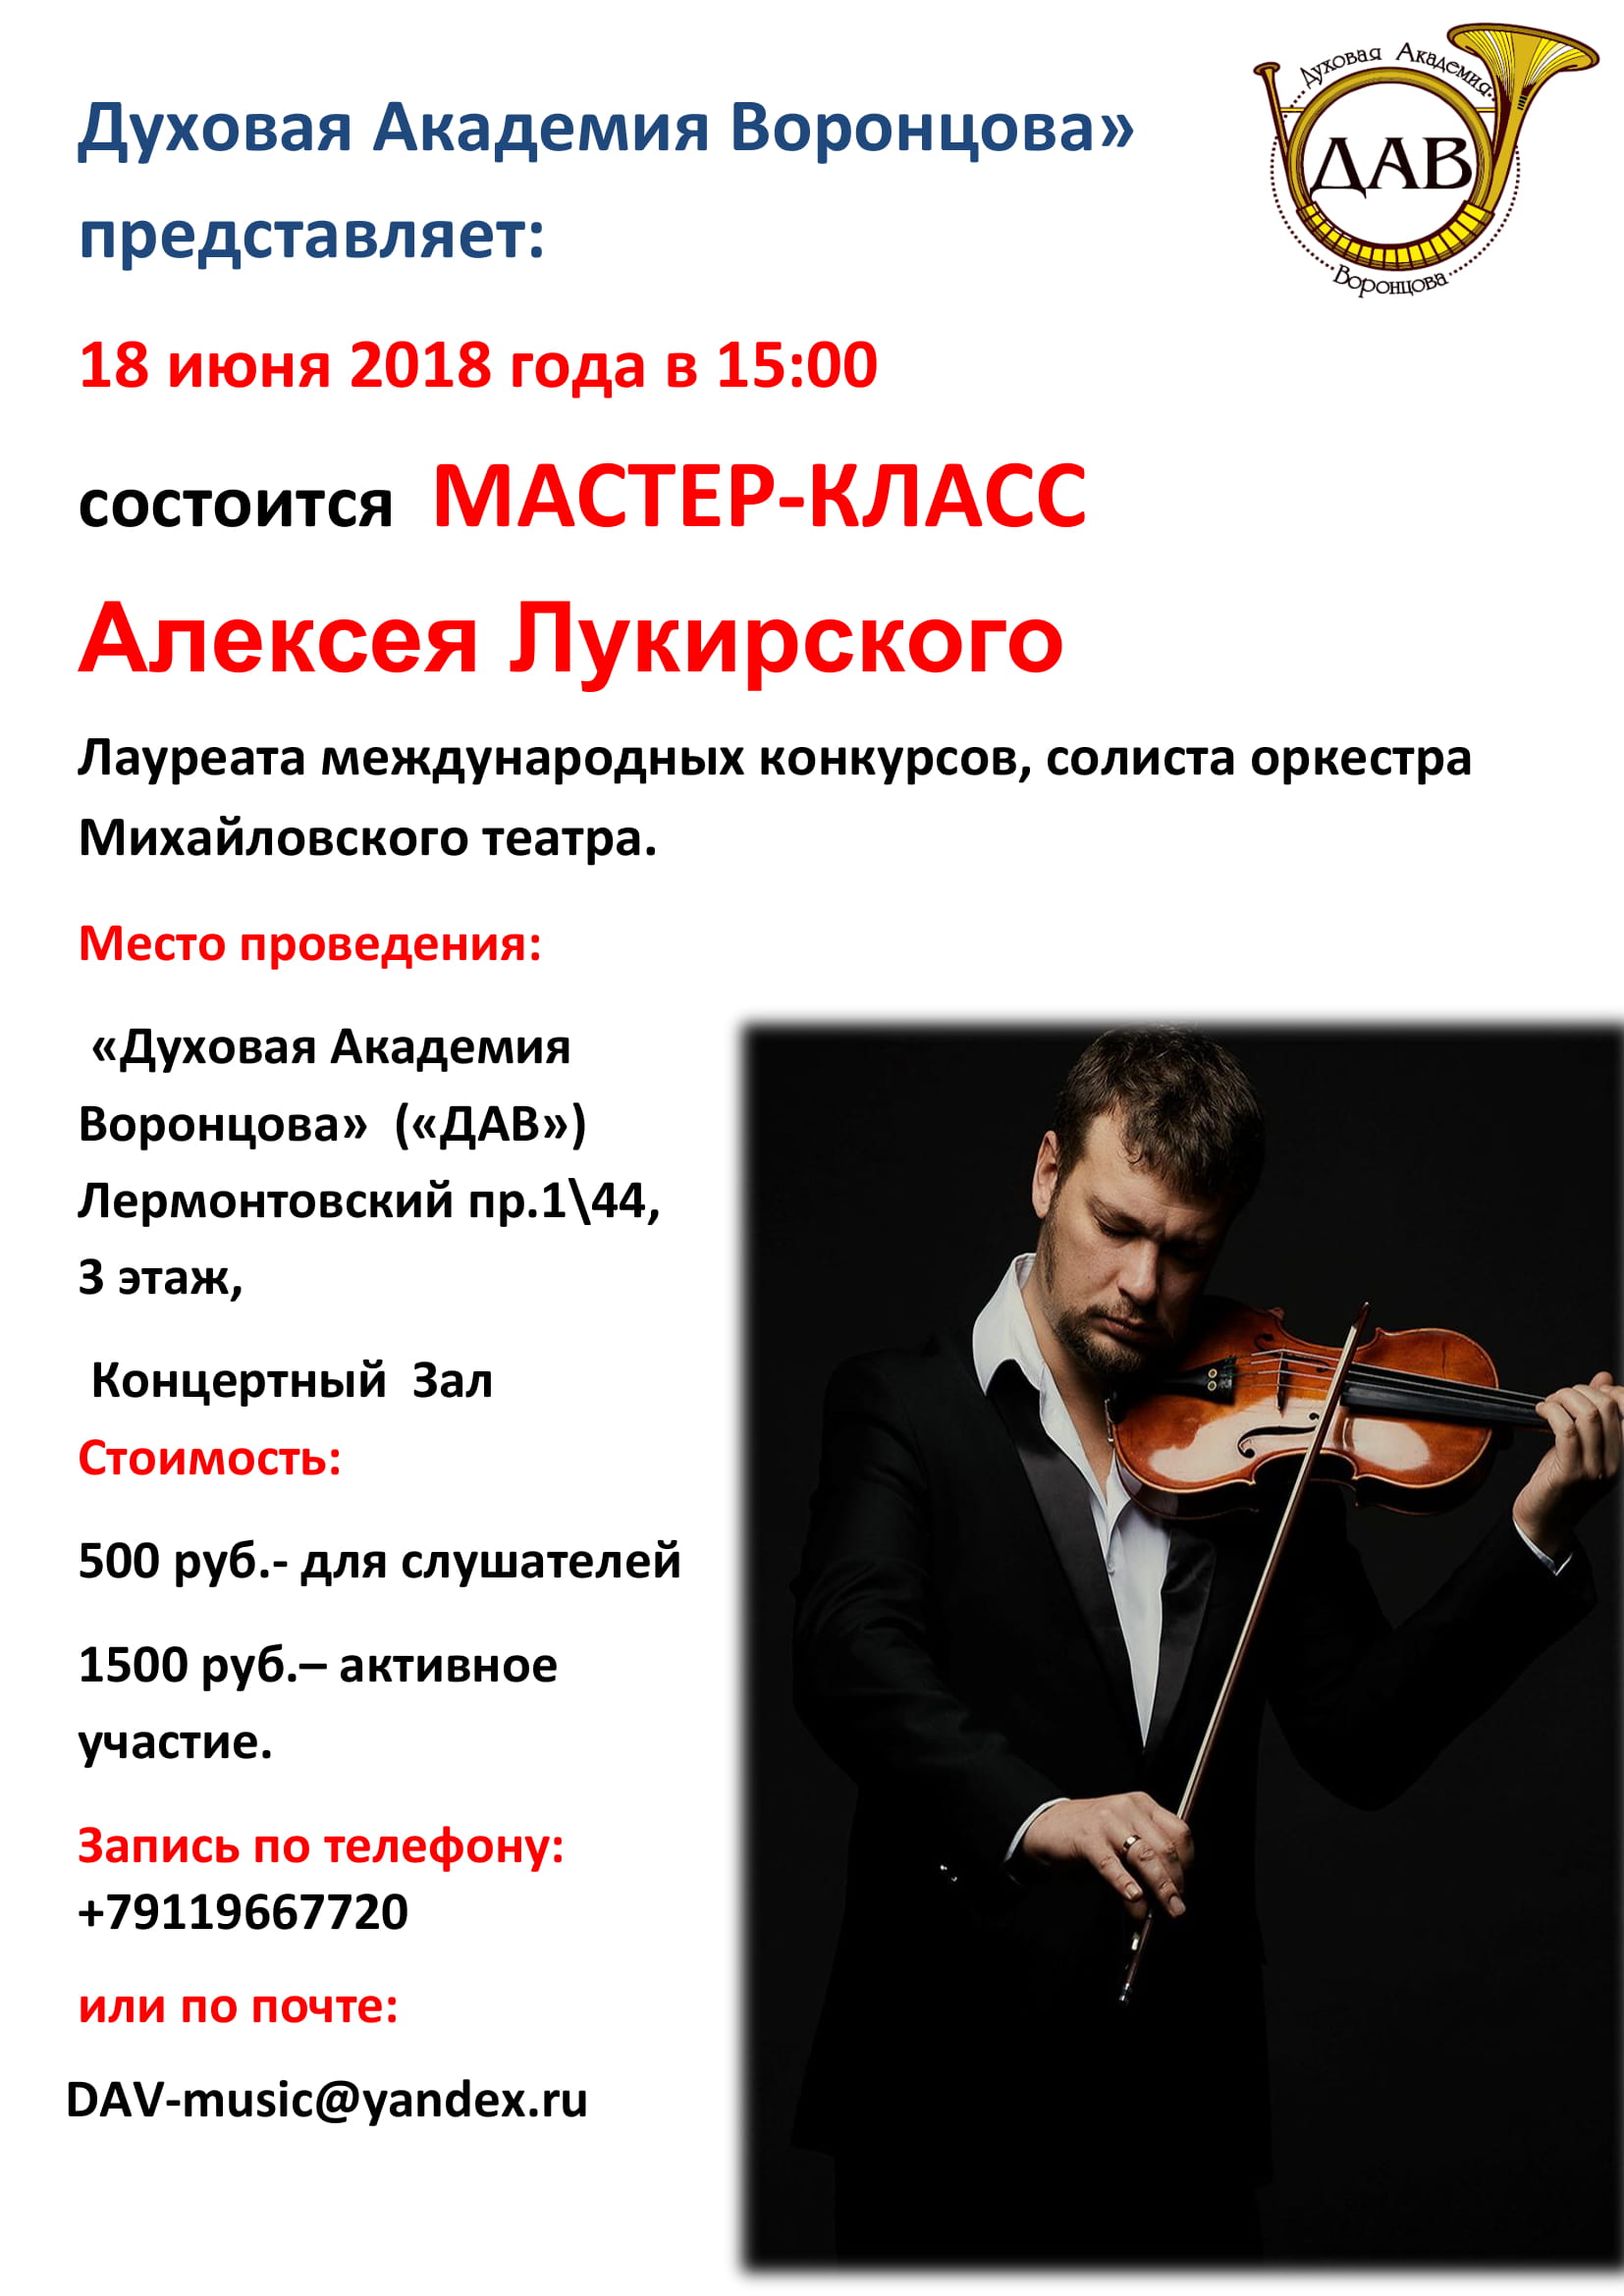 оркестр михайловского театра состав